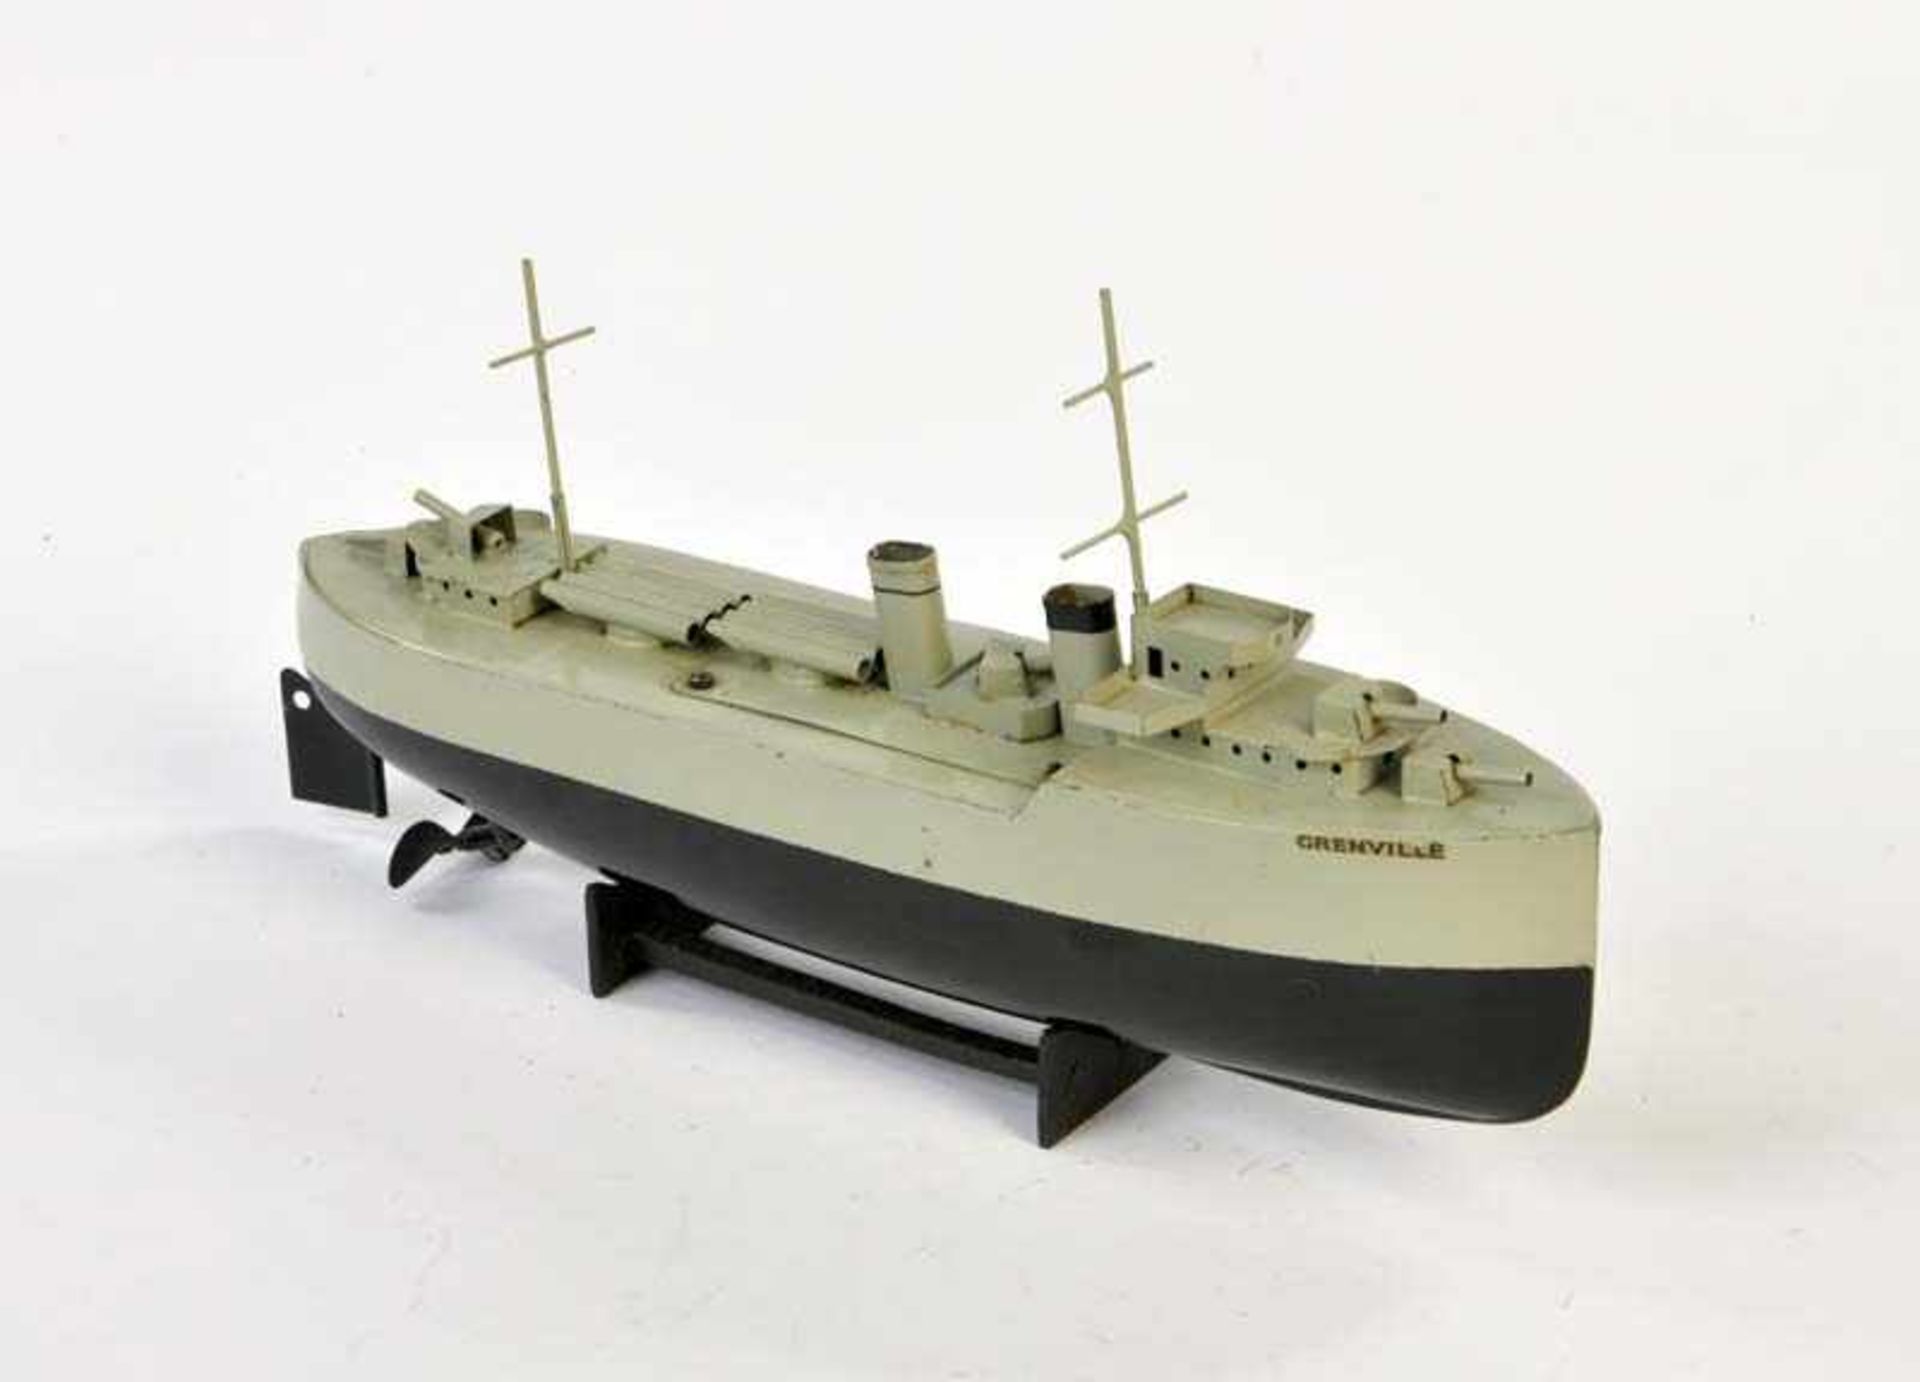 Sutcliff, Schiff "Grenville", England, 31,5 cm, Blech, UW ok, min. LM, Z 1-2Sutcliff, Ship "